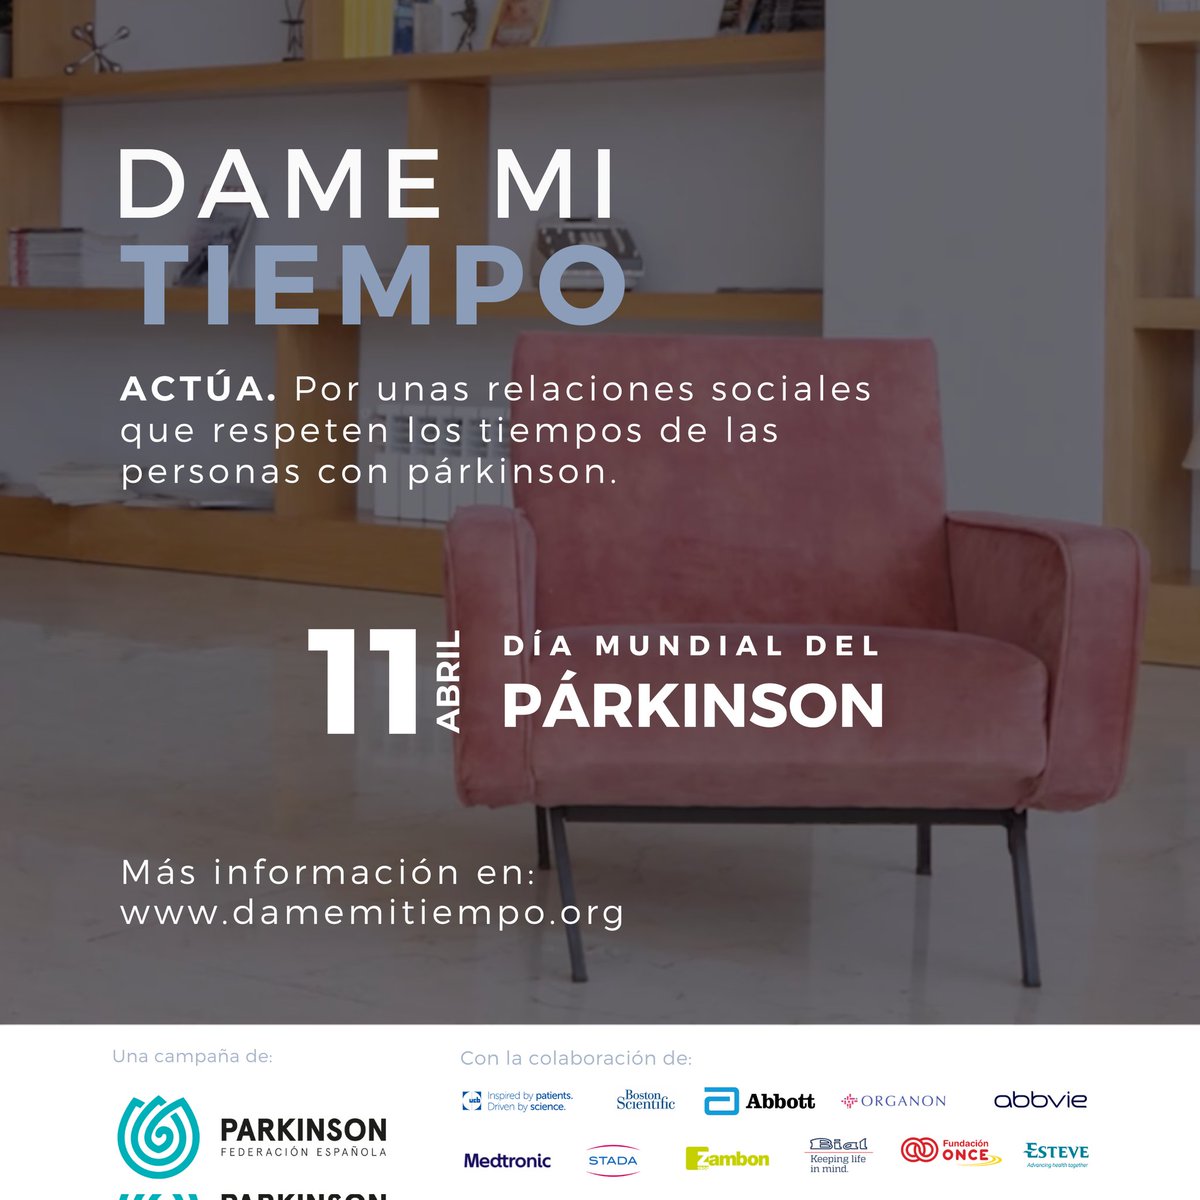 11 DE ABRIL, DÍA MUNDIAL DEL PARKINSON. #Damemitiempo Por unas relaciones sociales que respeten los tiempos de las personas con Parkinson. ⏳💜 @feparkinson #damemitiempoparkinson #damemitiempoparkinsoncastellon